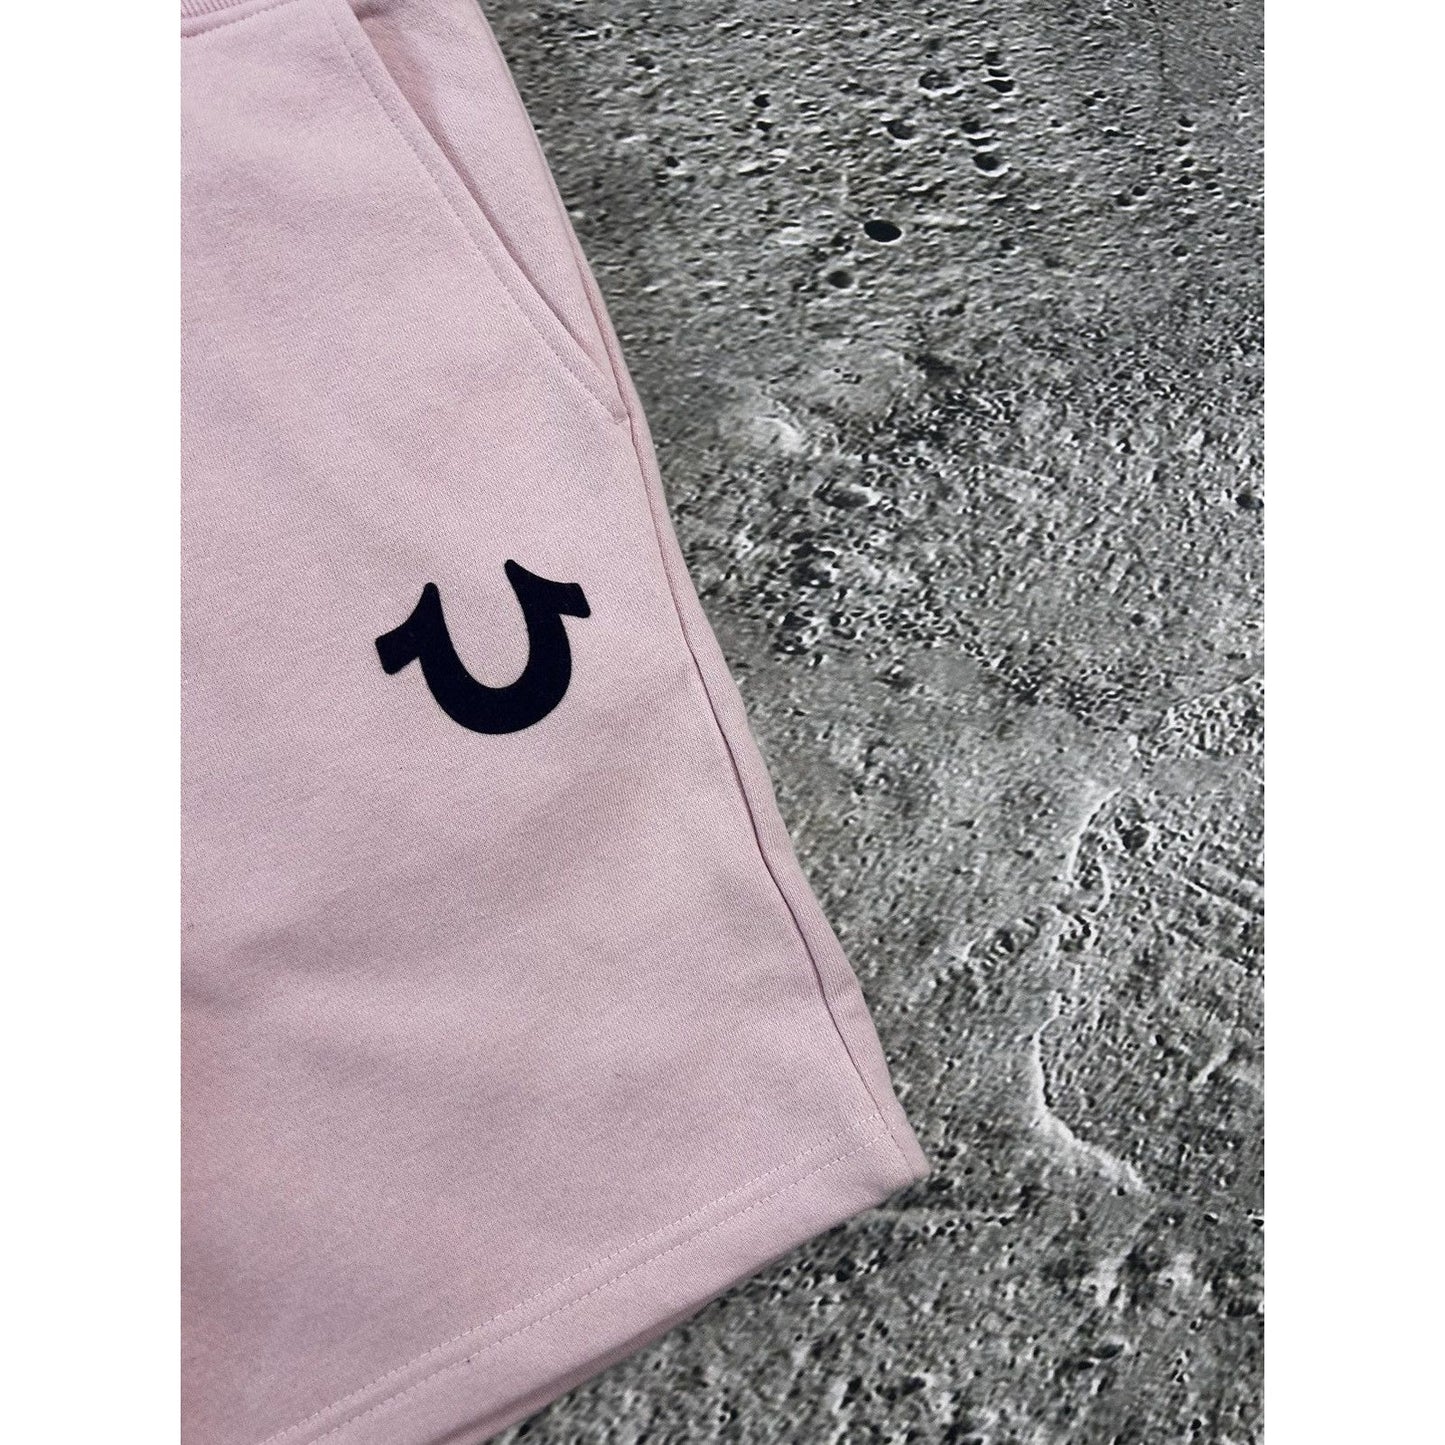 True Religion shorts pink Y2K vintage swag sweatshorts